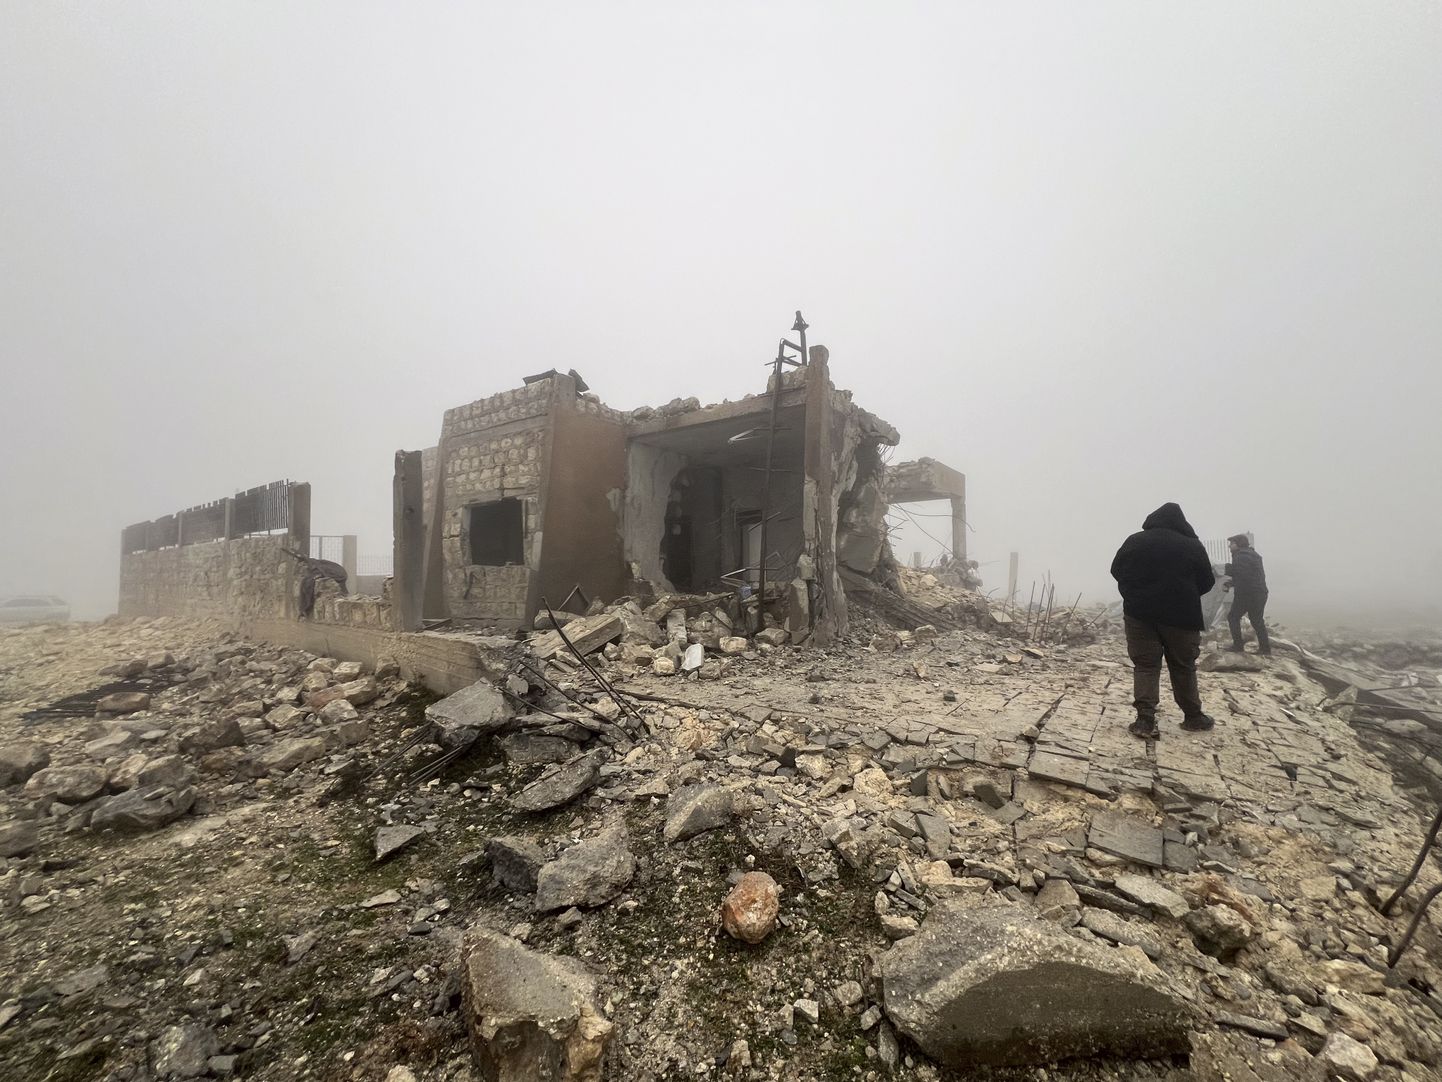 Iraani raketirünnakus Süüria Talteta külale hävinud hoone.